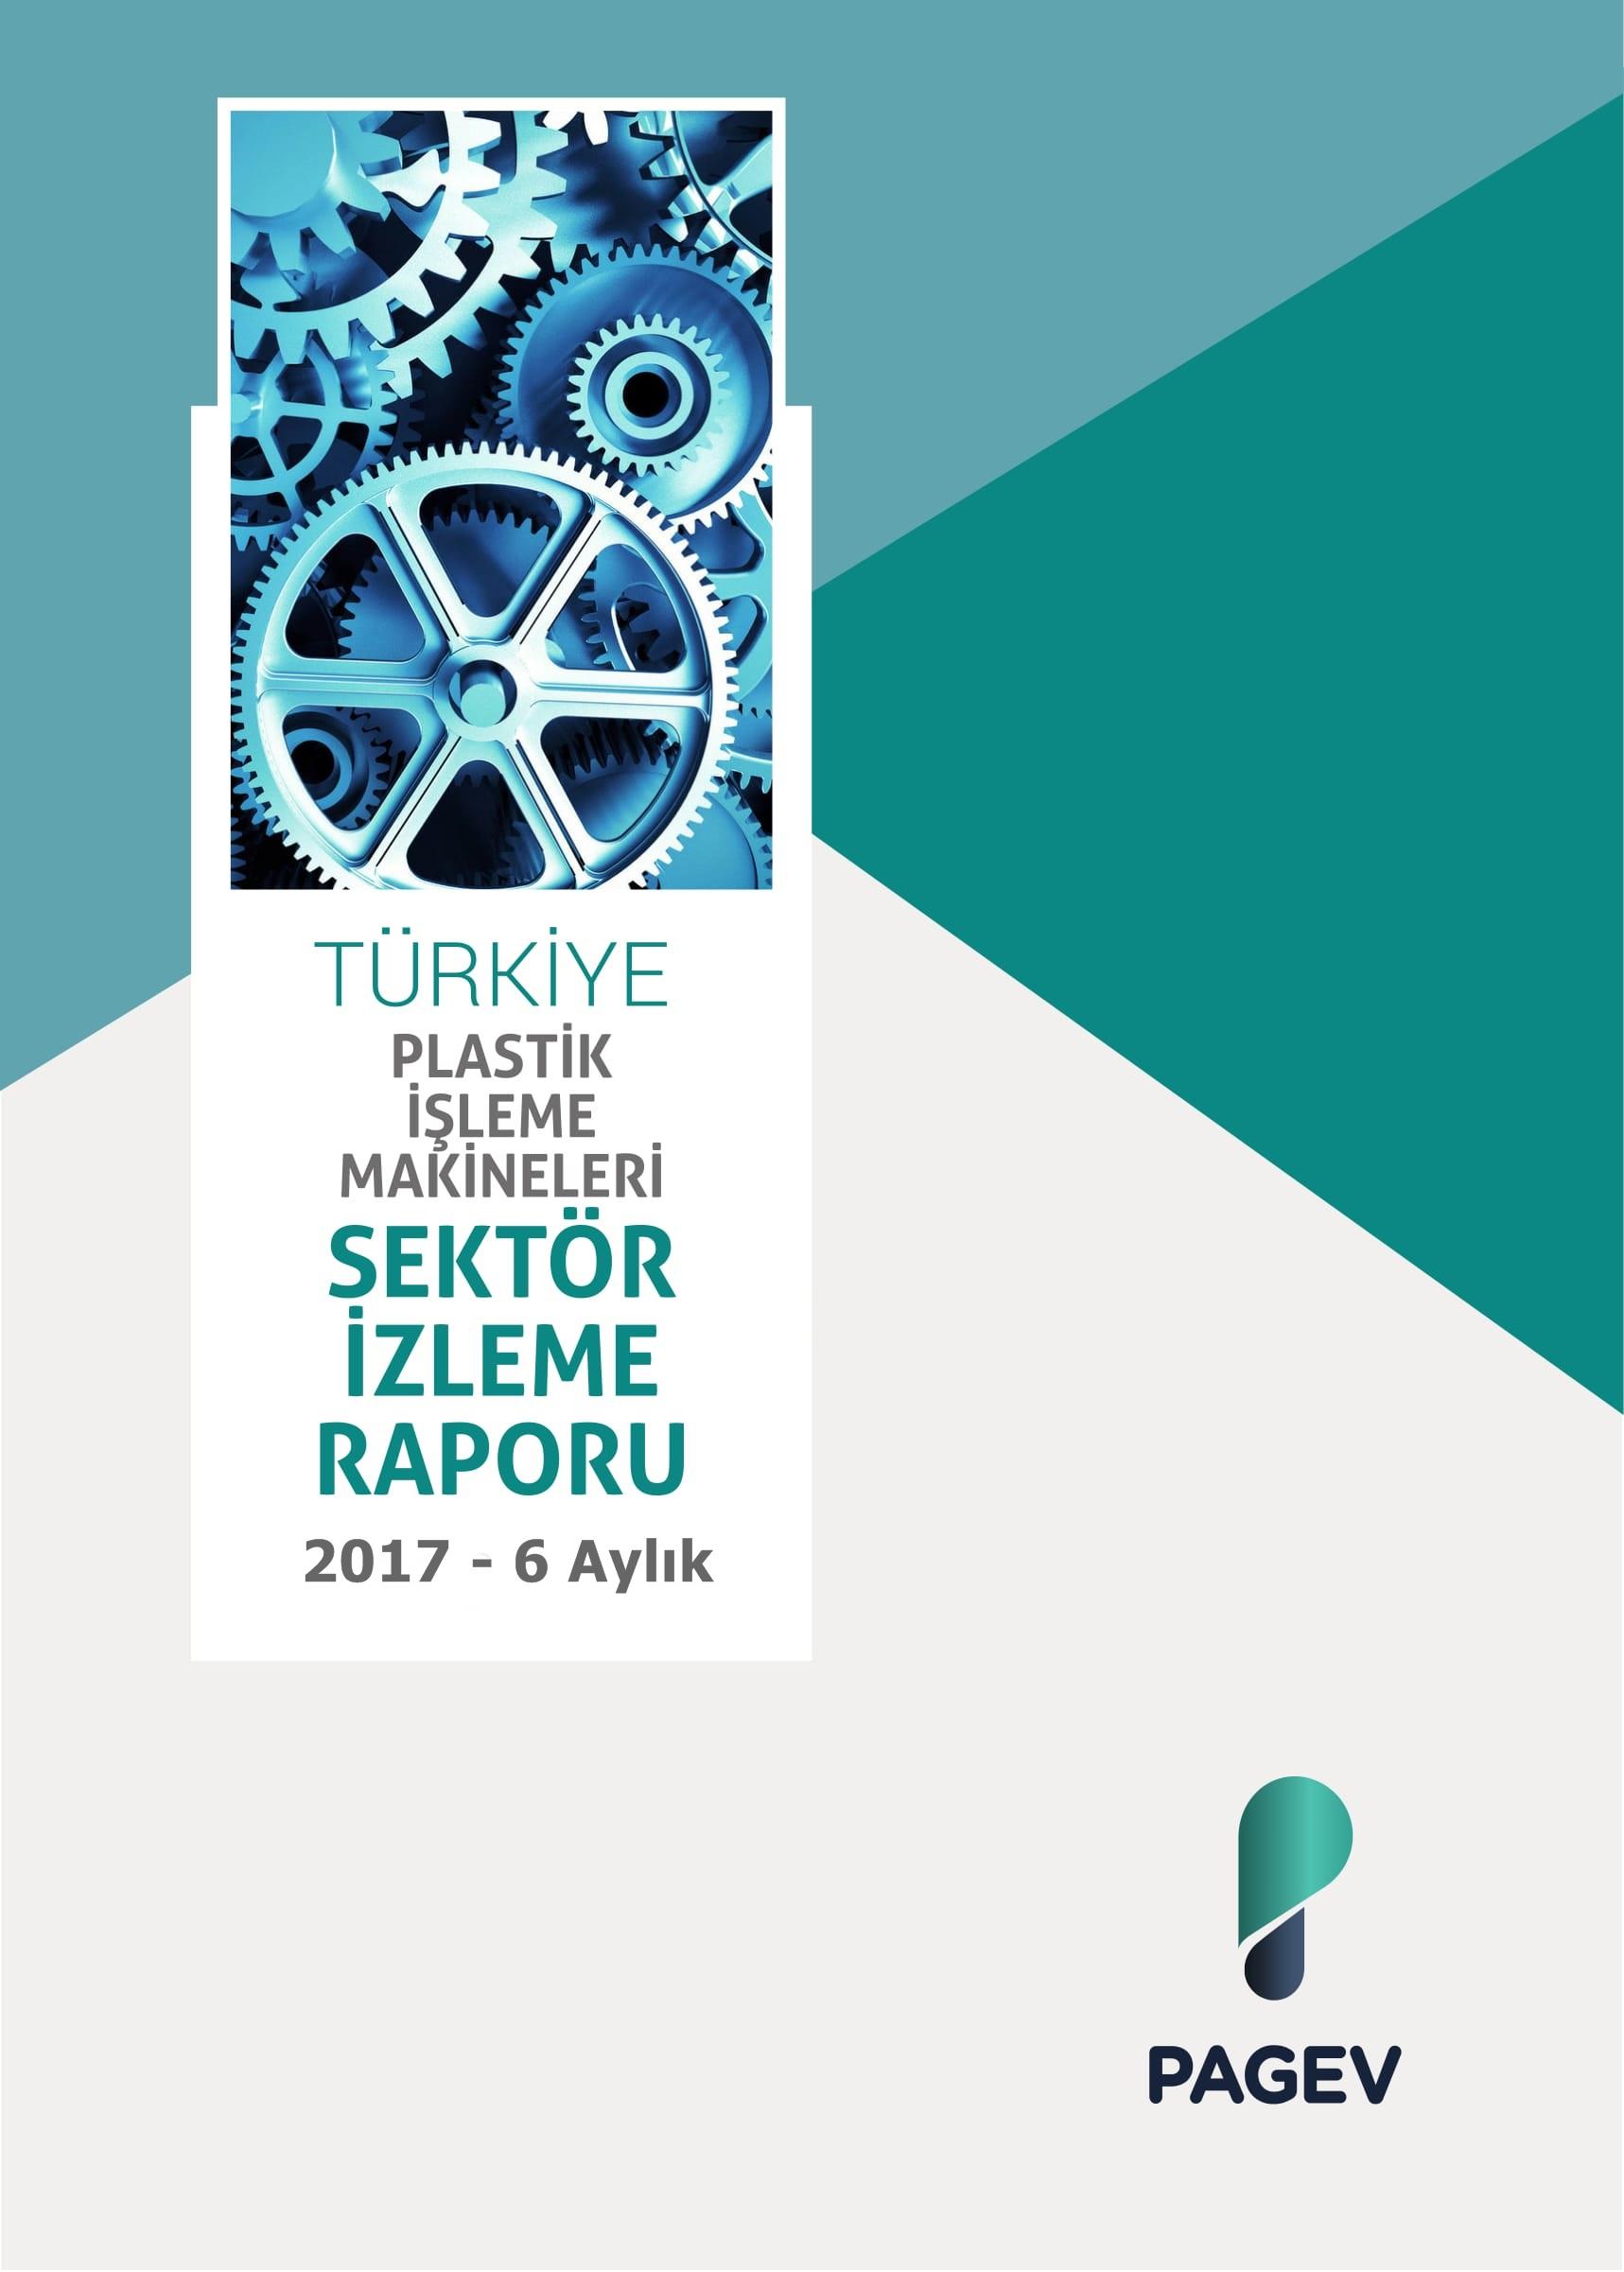 Türkiye Plastik İşleme Makinaları Sektör İzleme Raporu 2017/6 Aylık